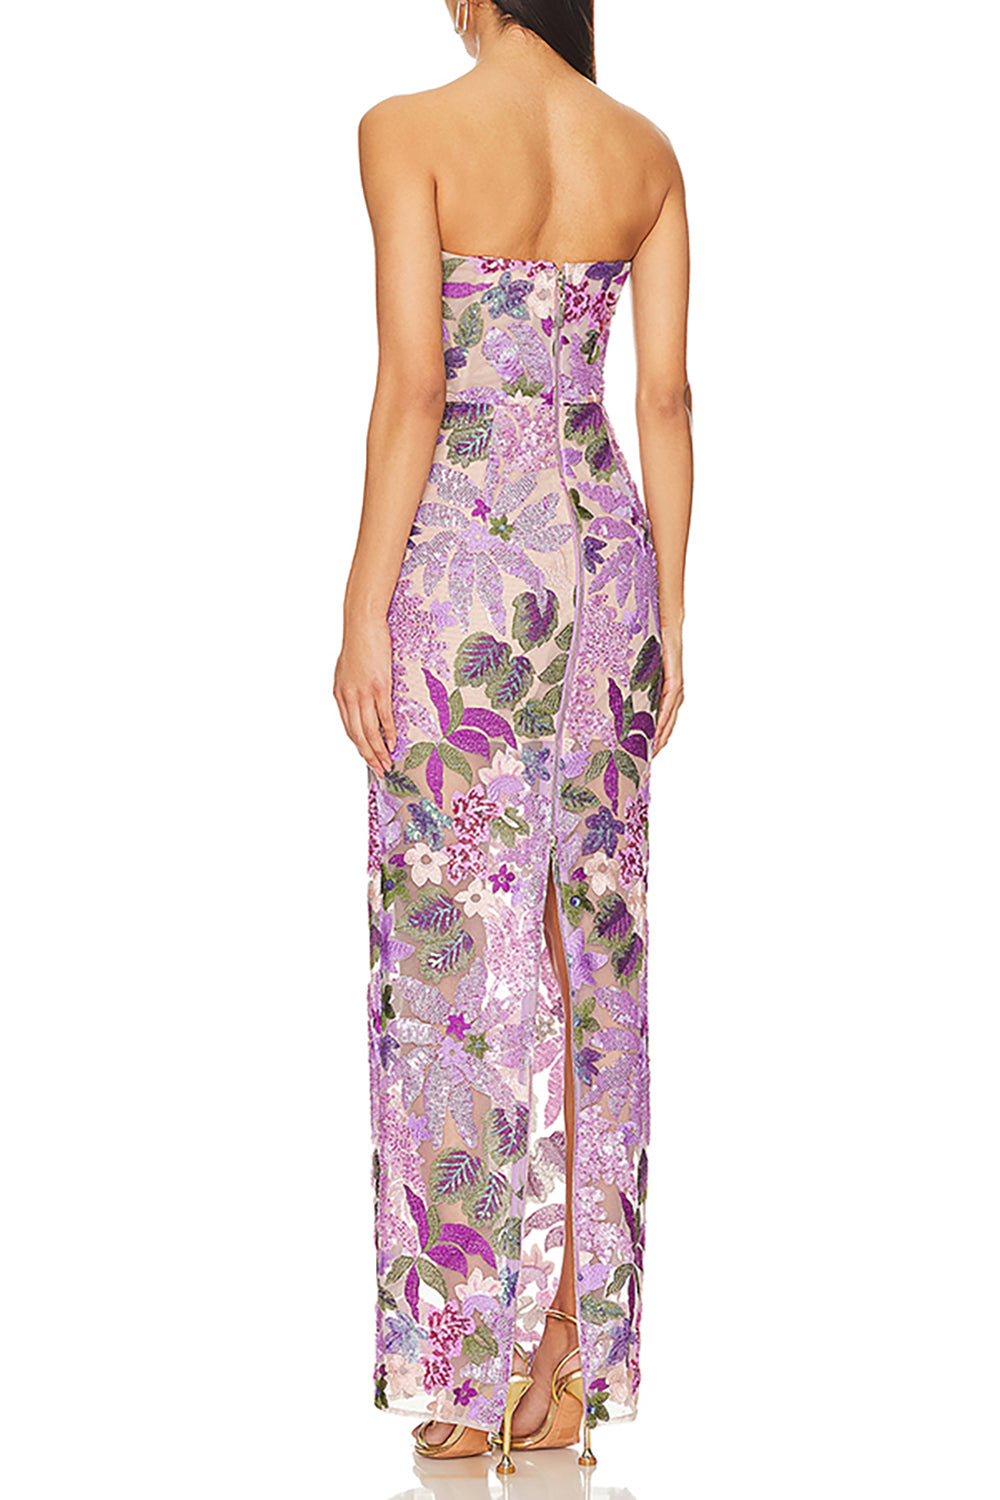 Strapless Flower Sequins Embellished Maxi Dress